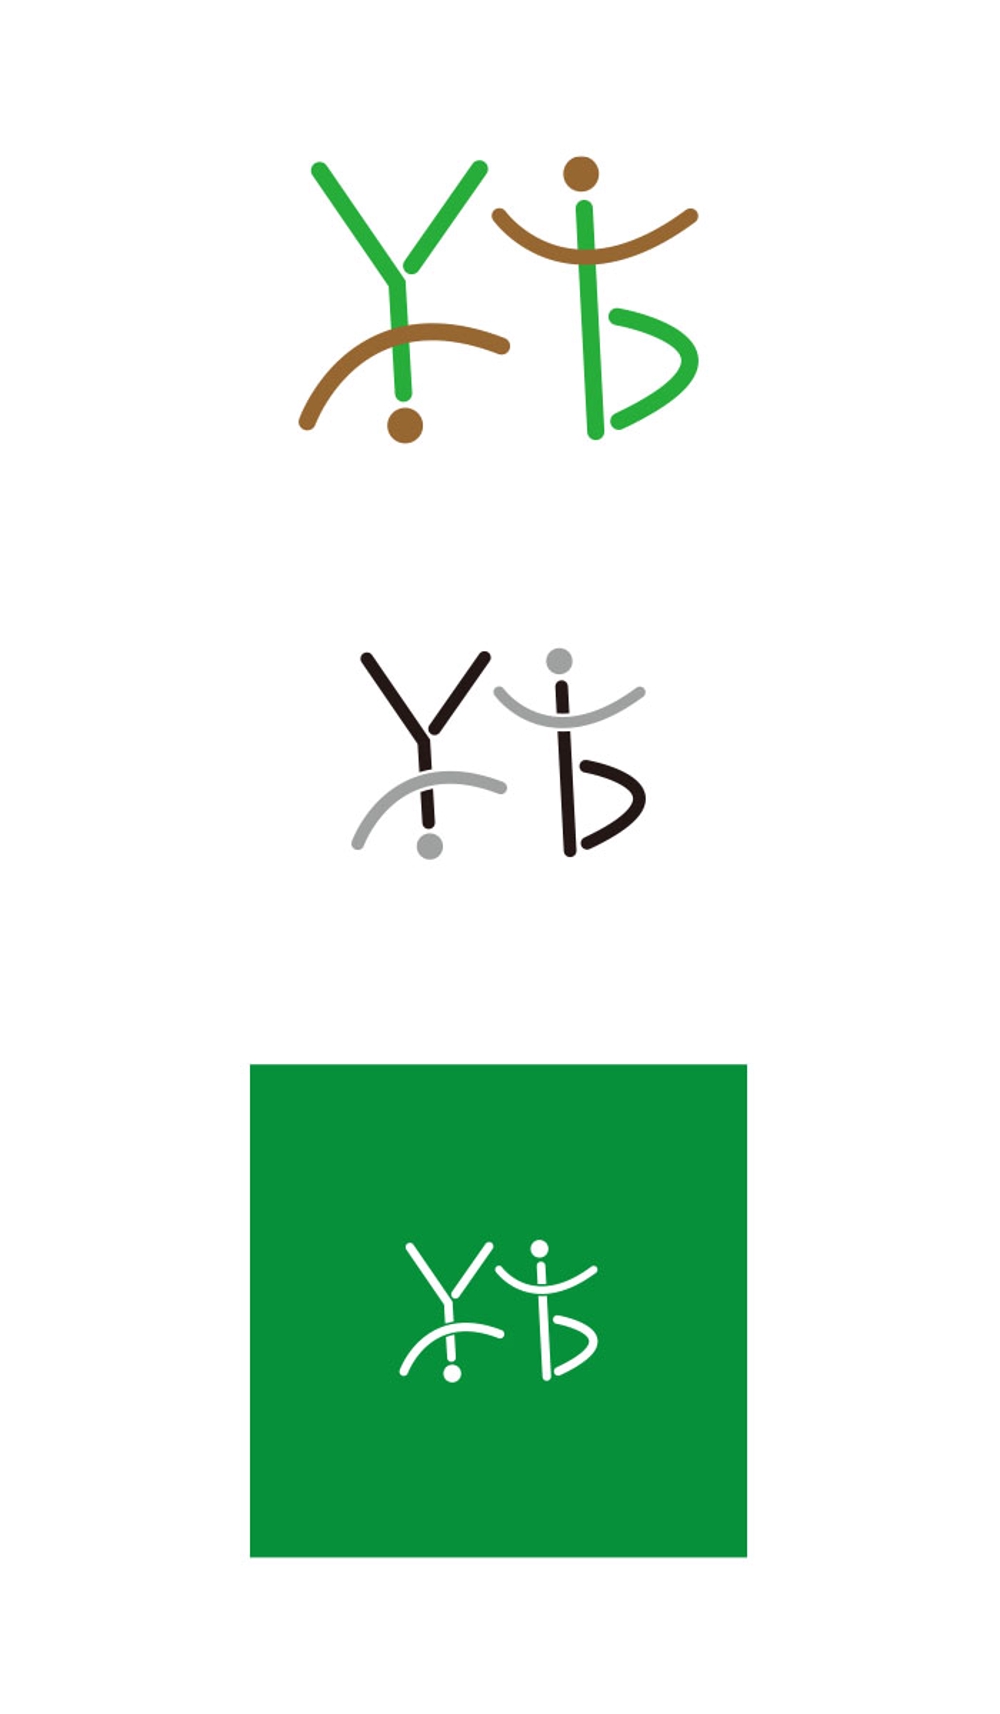 やまびこ幼稚園 logo_serve.jpg